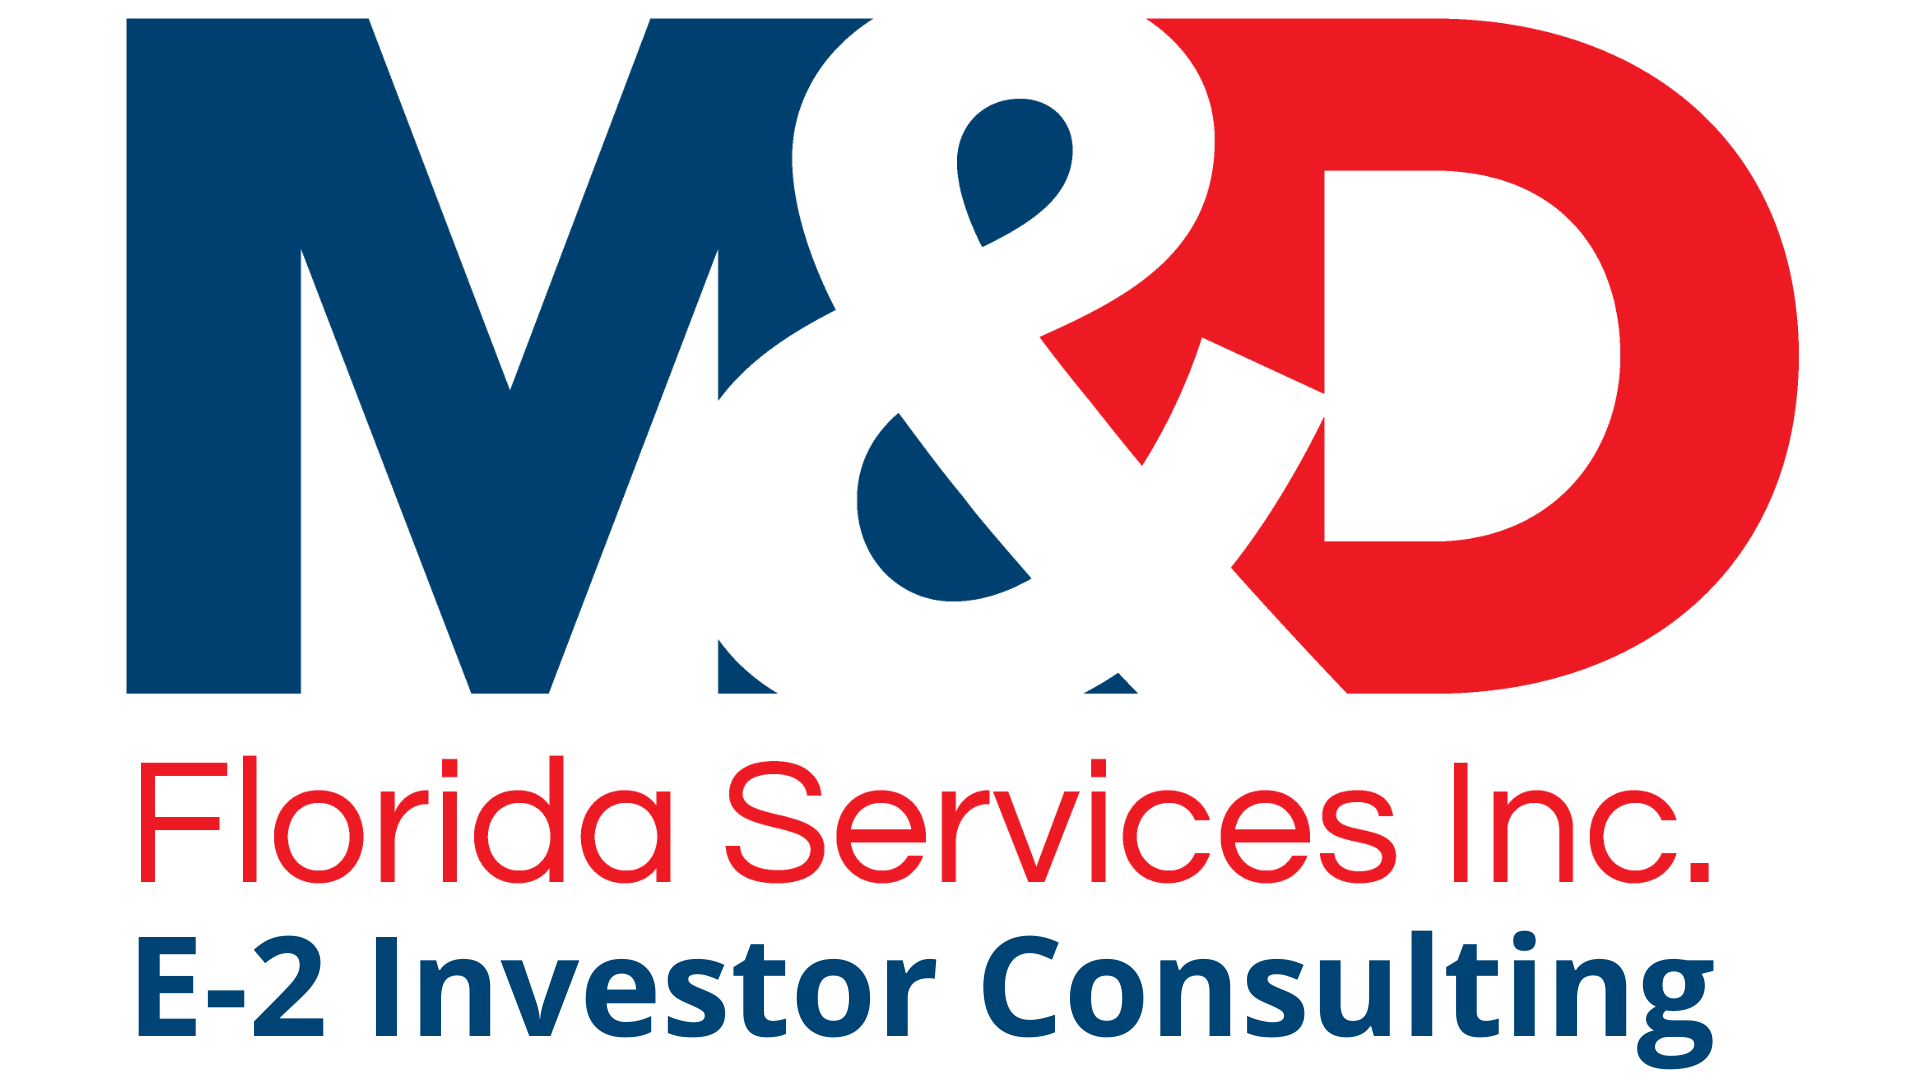 E2 Visa Consulting Florida USA - M&D Florida Services